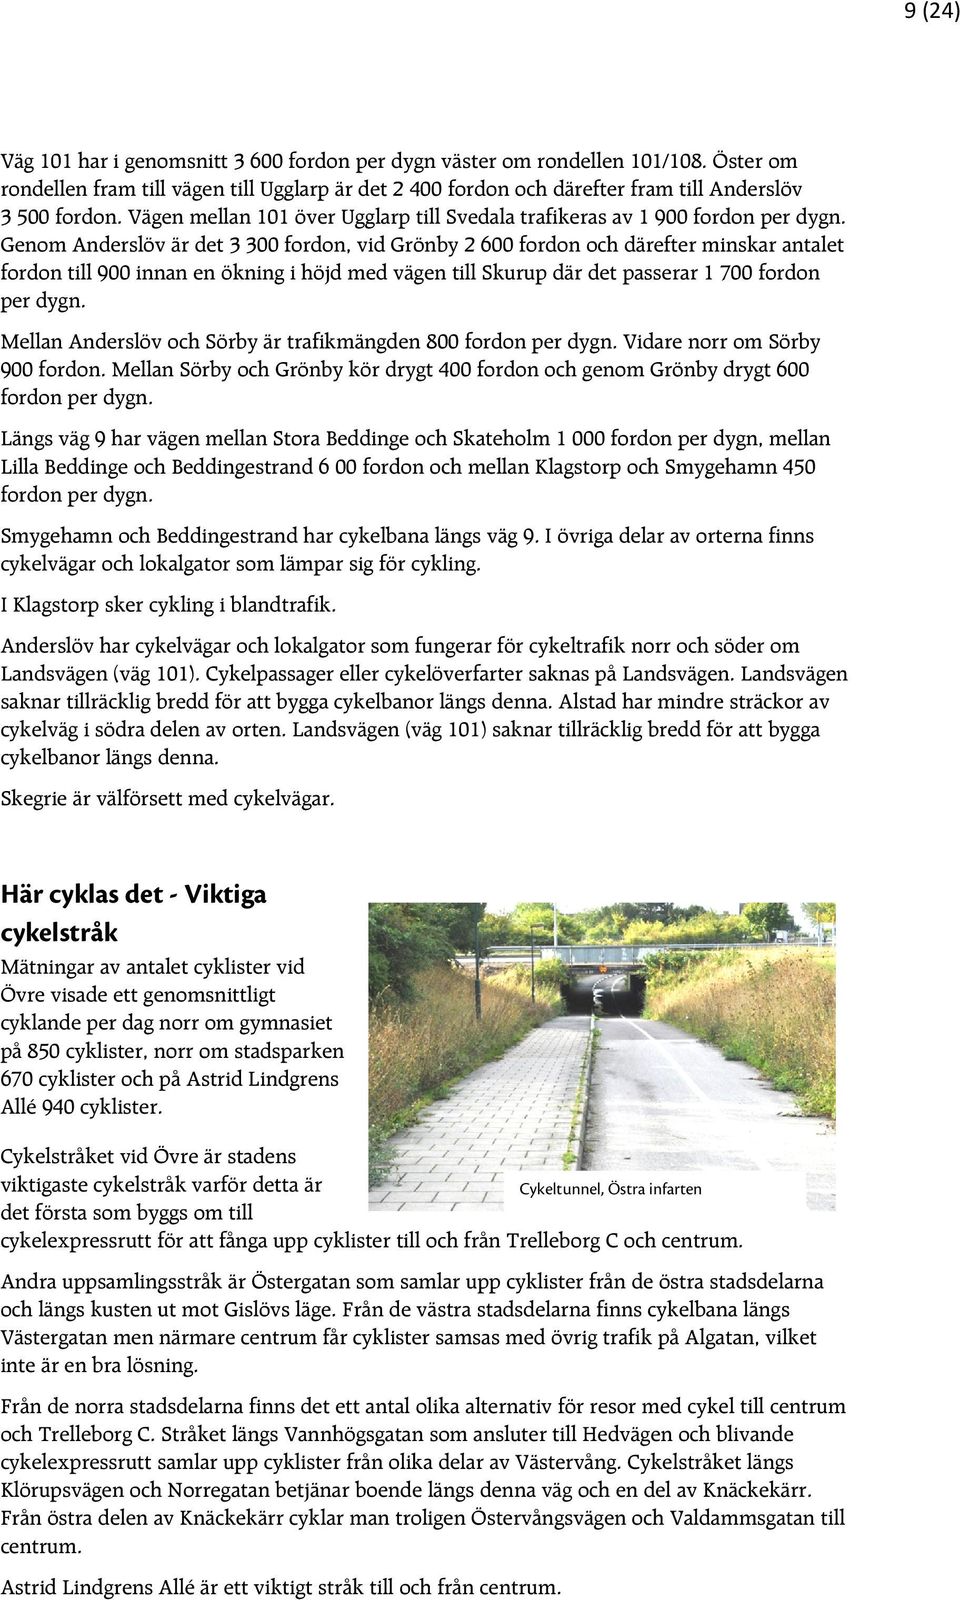 Genom Anderslöv är det 3 300 fordon, vid Grönby 2 600 fordon och därefter minskar antalet fordon till 900 innan en ökning i höjd med vägen till Skurup där det passerar 1 700 fordon per dygn.